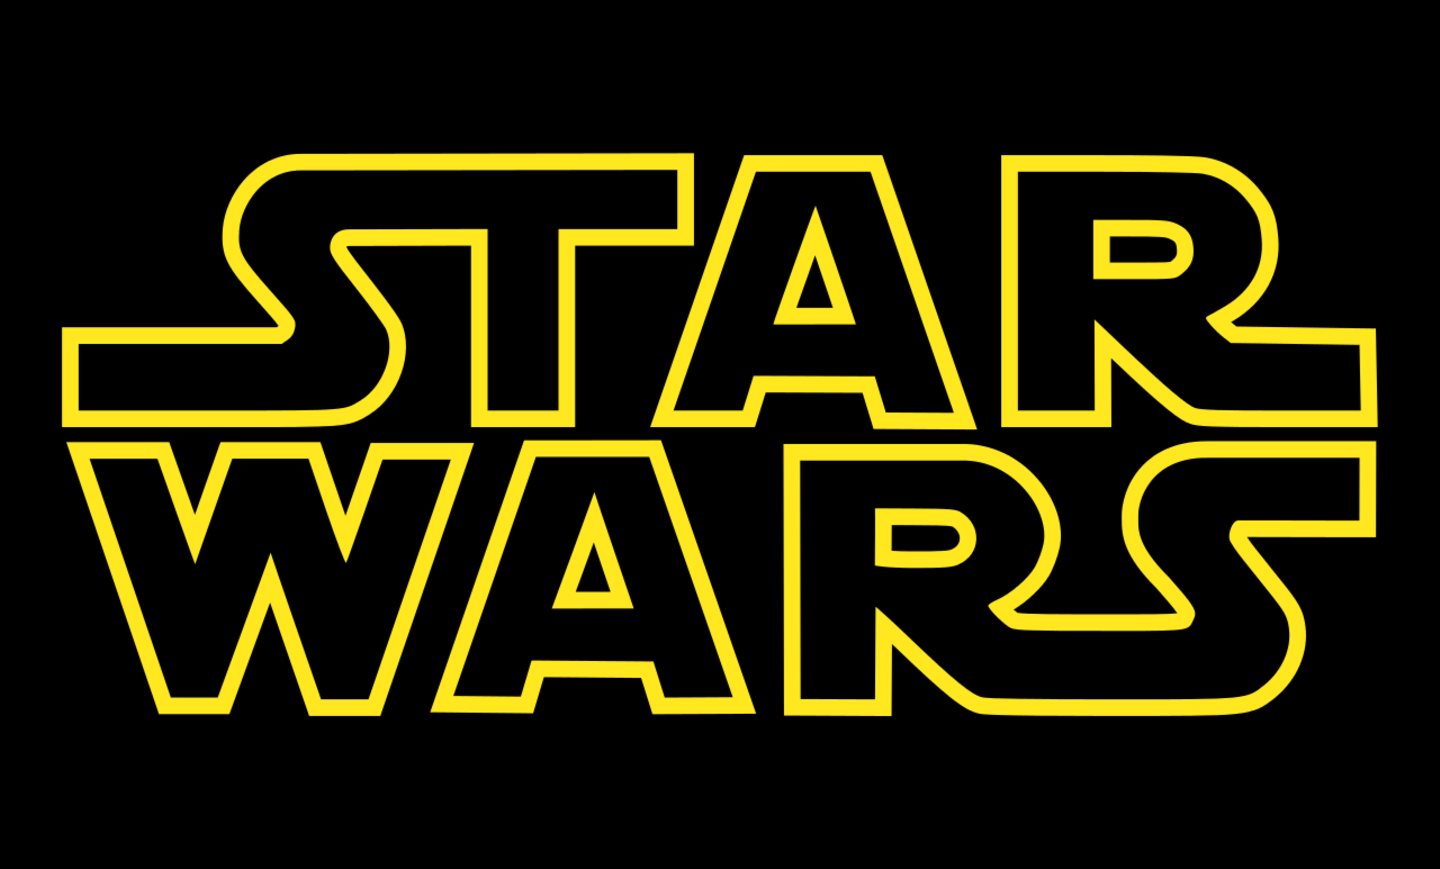 Der neue Star Wars Film erscheint im Dezember 2017